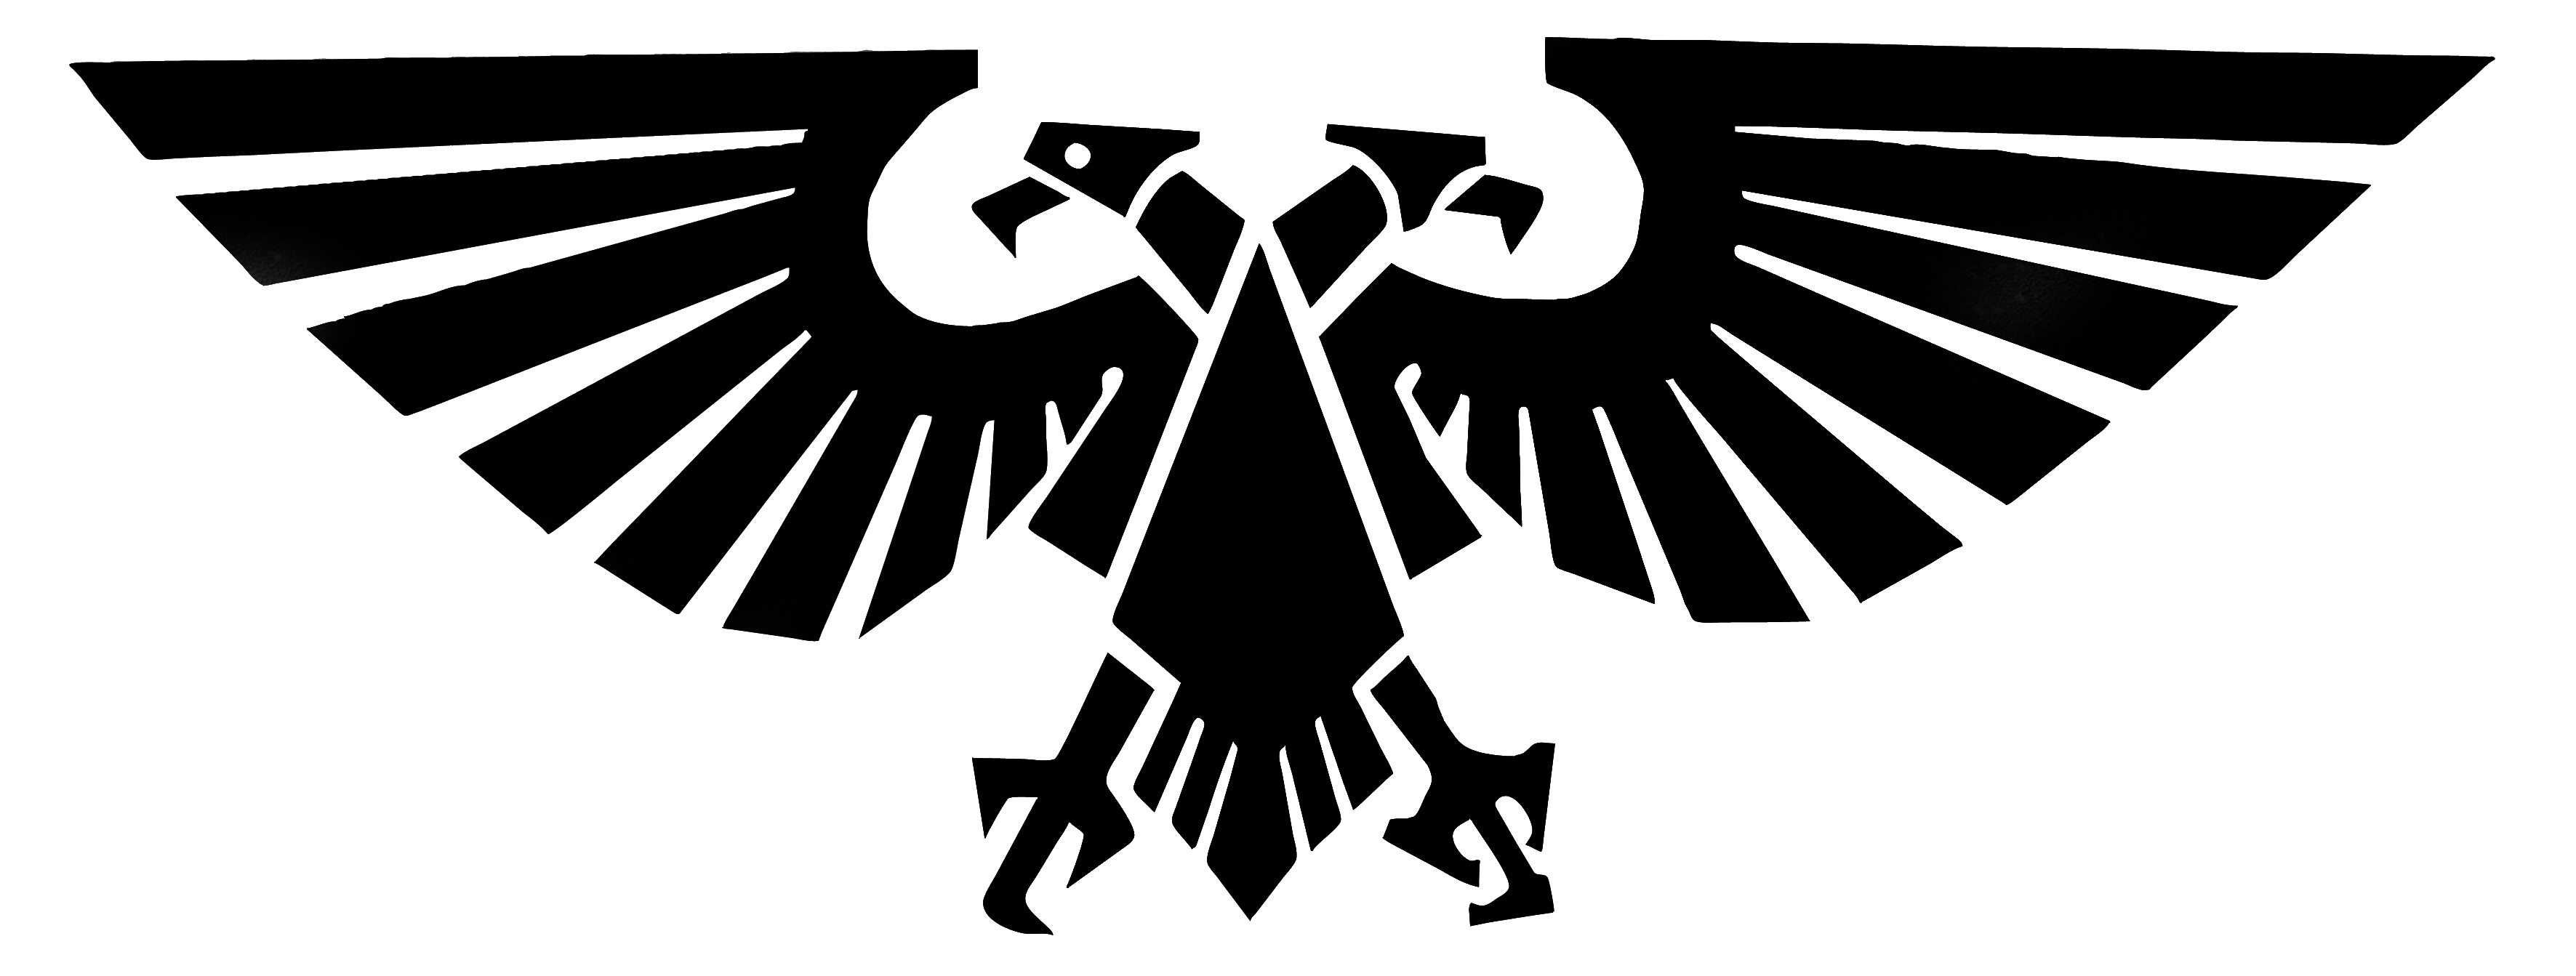 Eagle Black Logo Png Image Download PNG Image